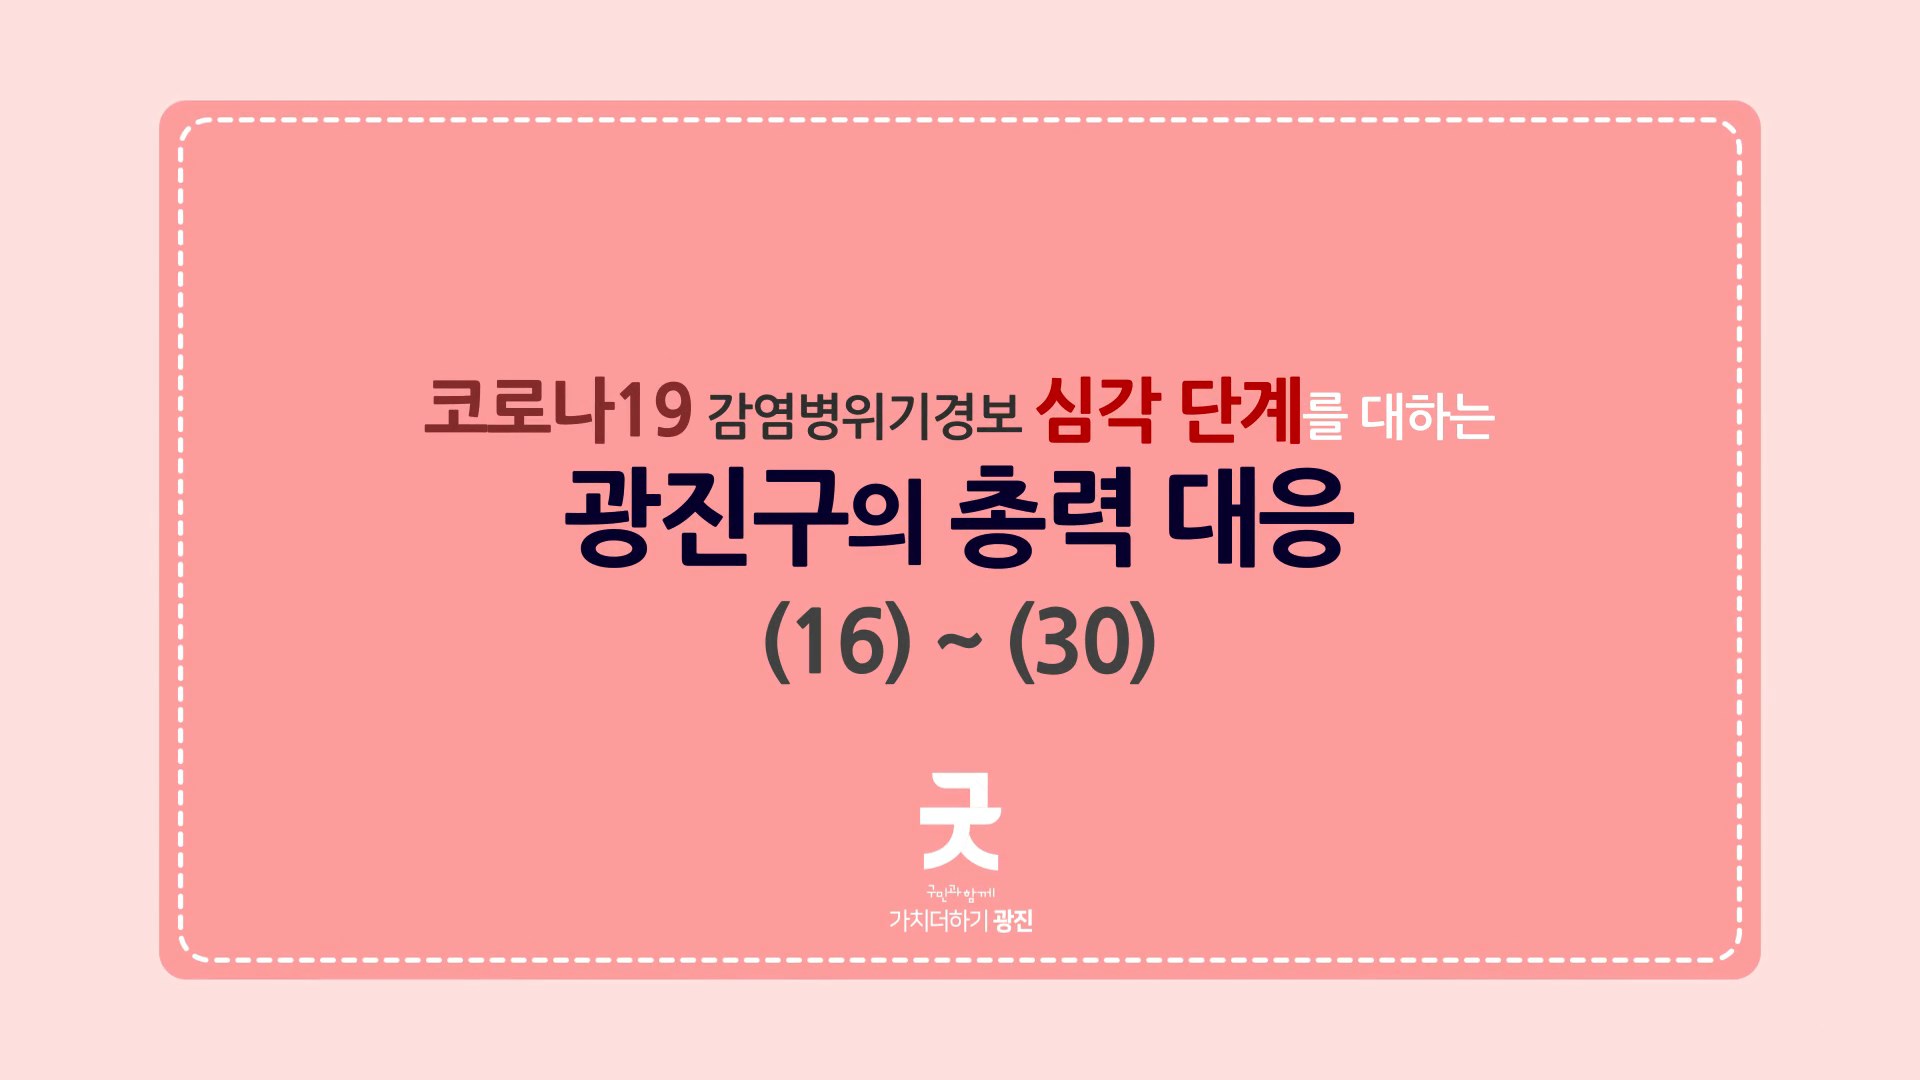 코로나19 감염병위기경보 심각단계를 대하는 광진구의 총력 대응_카드뉴스(16~30) 